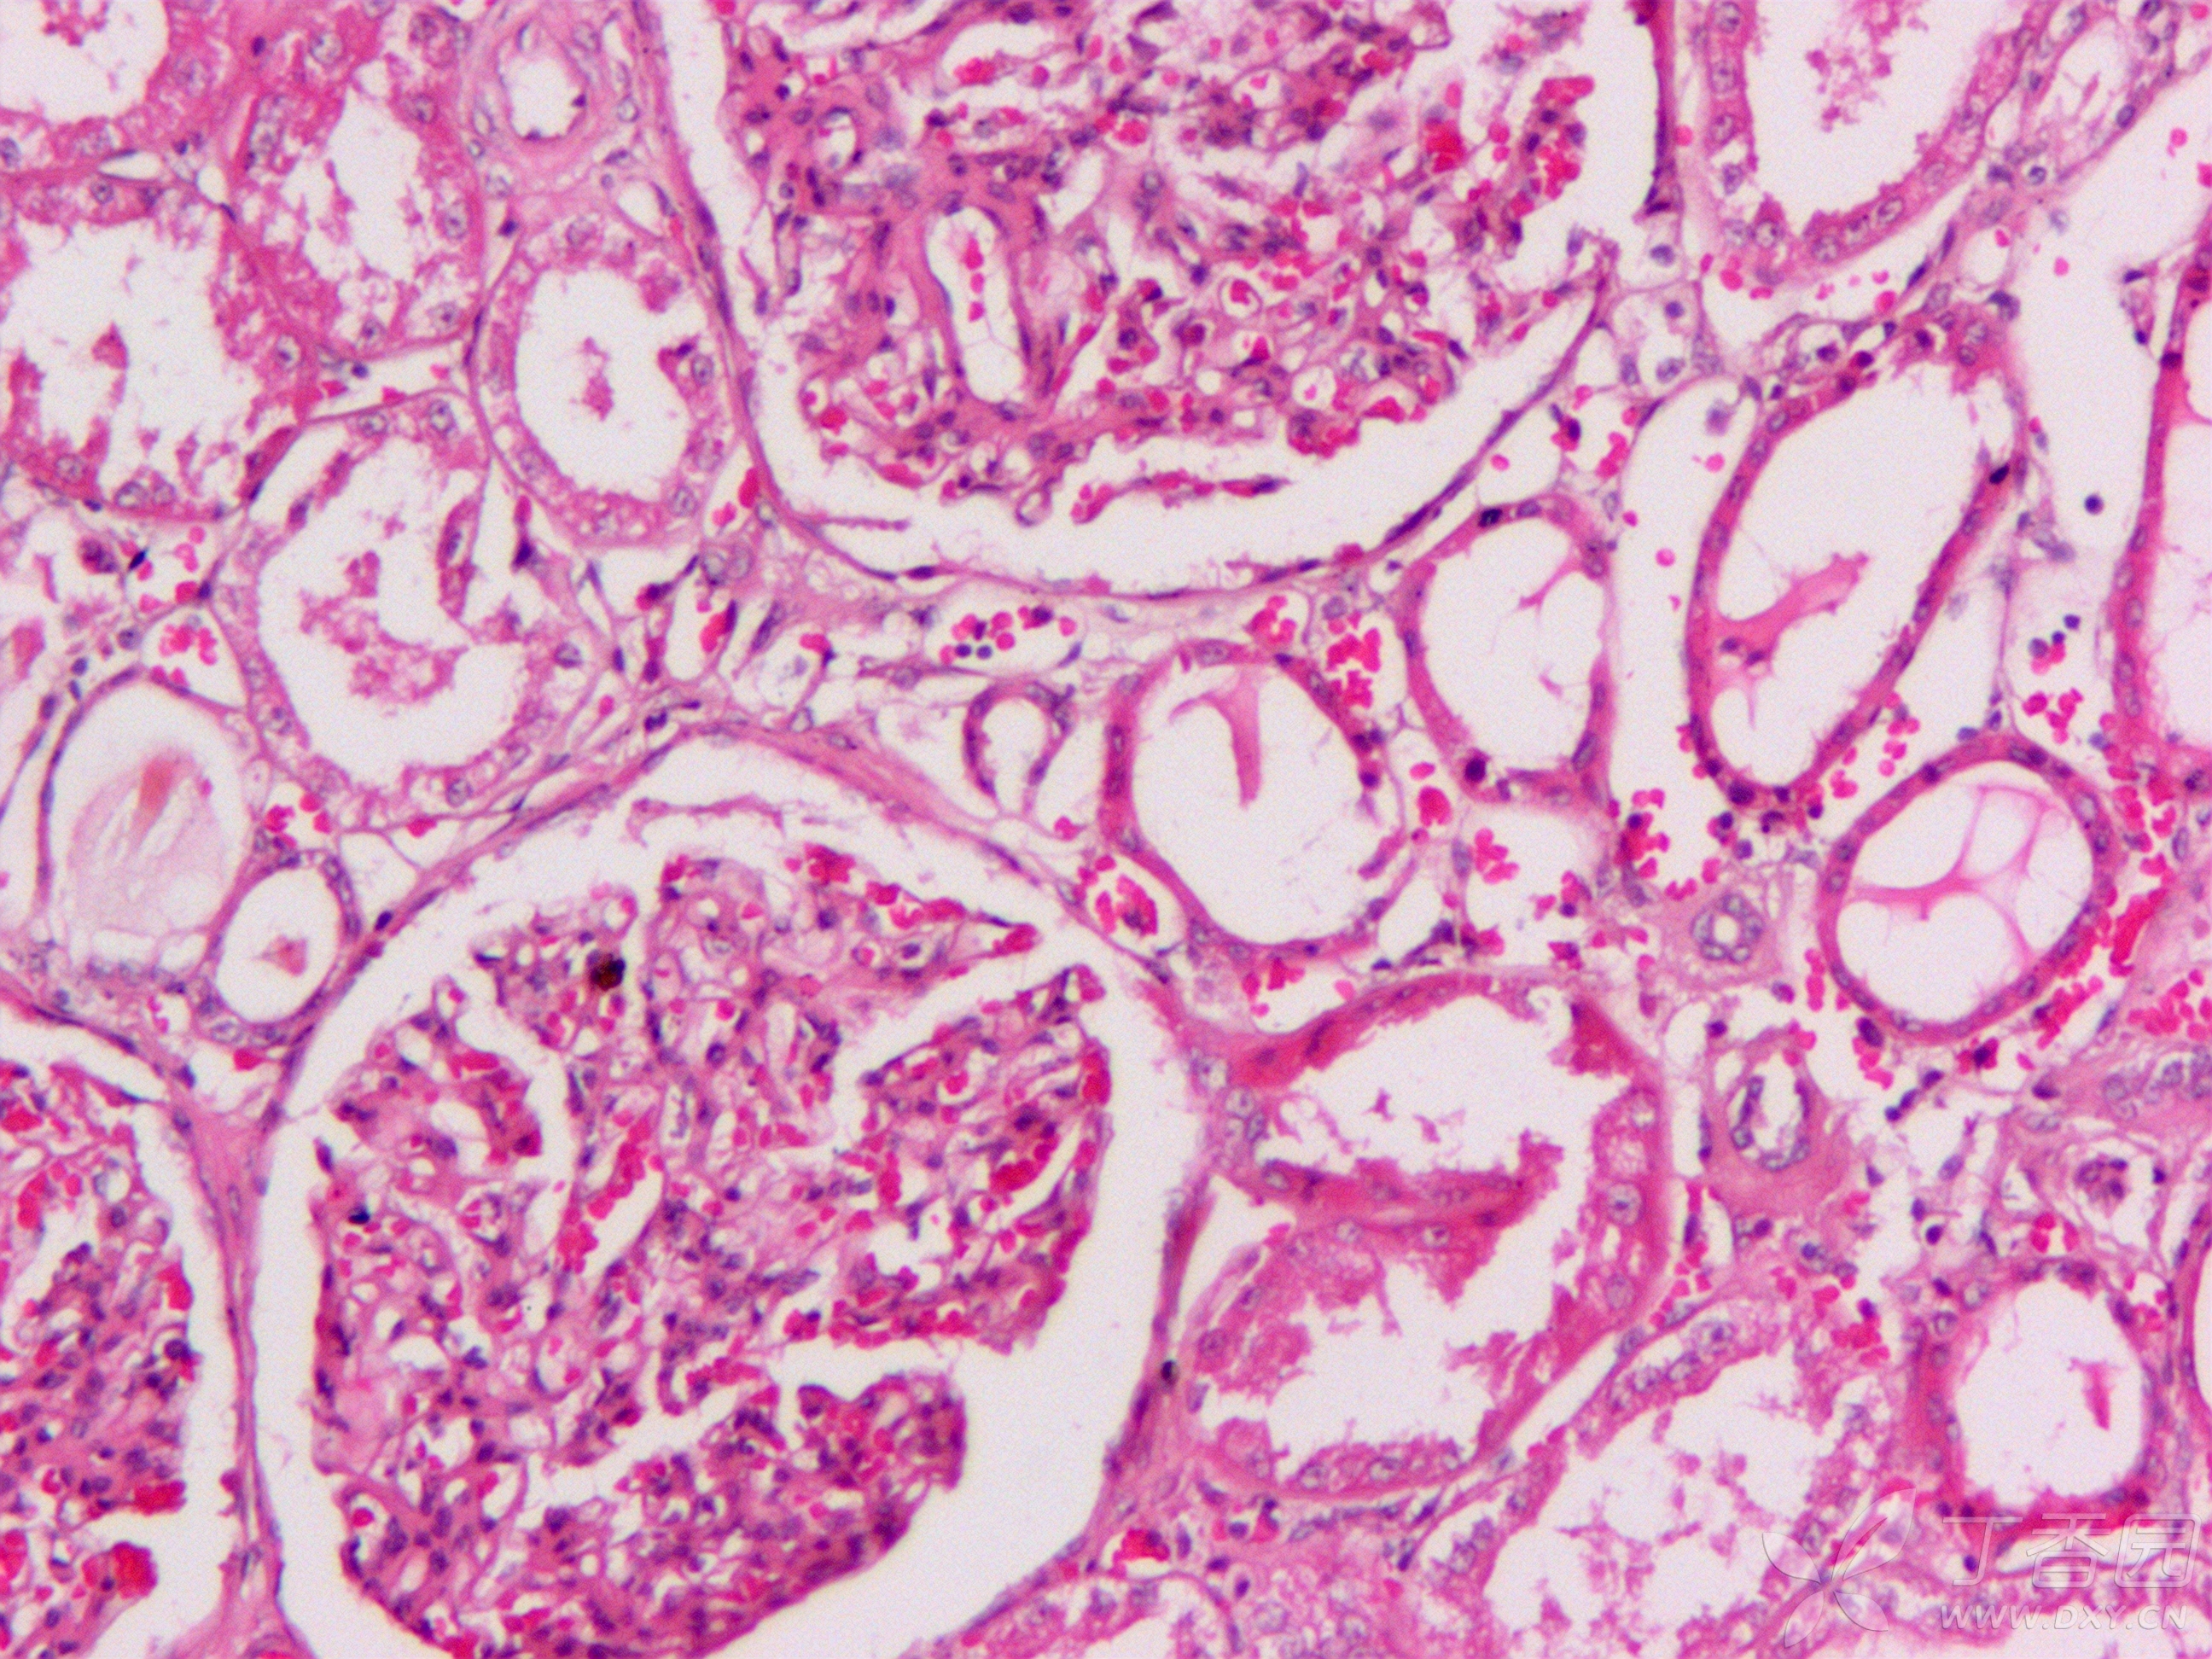 图二三是肾的he,除了肾小球增大,系膜增厚,肾小管扩张,肾小管玻璃样